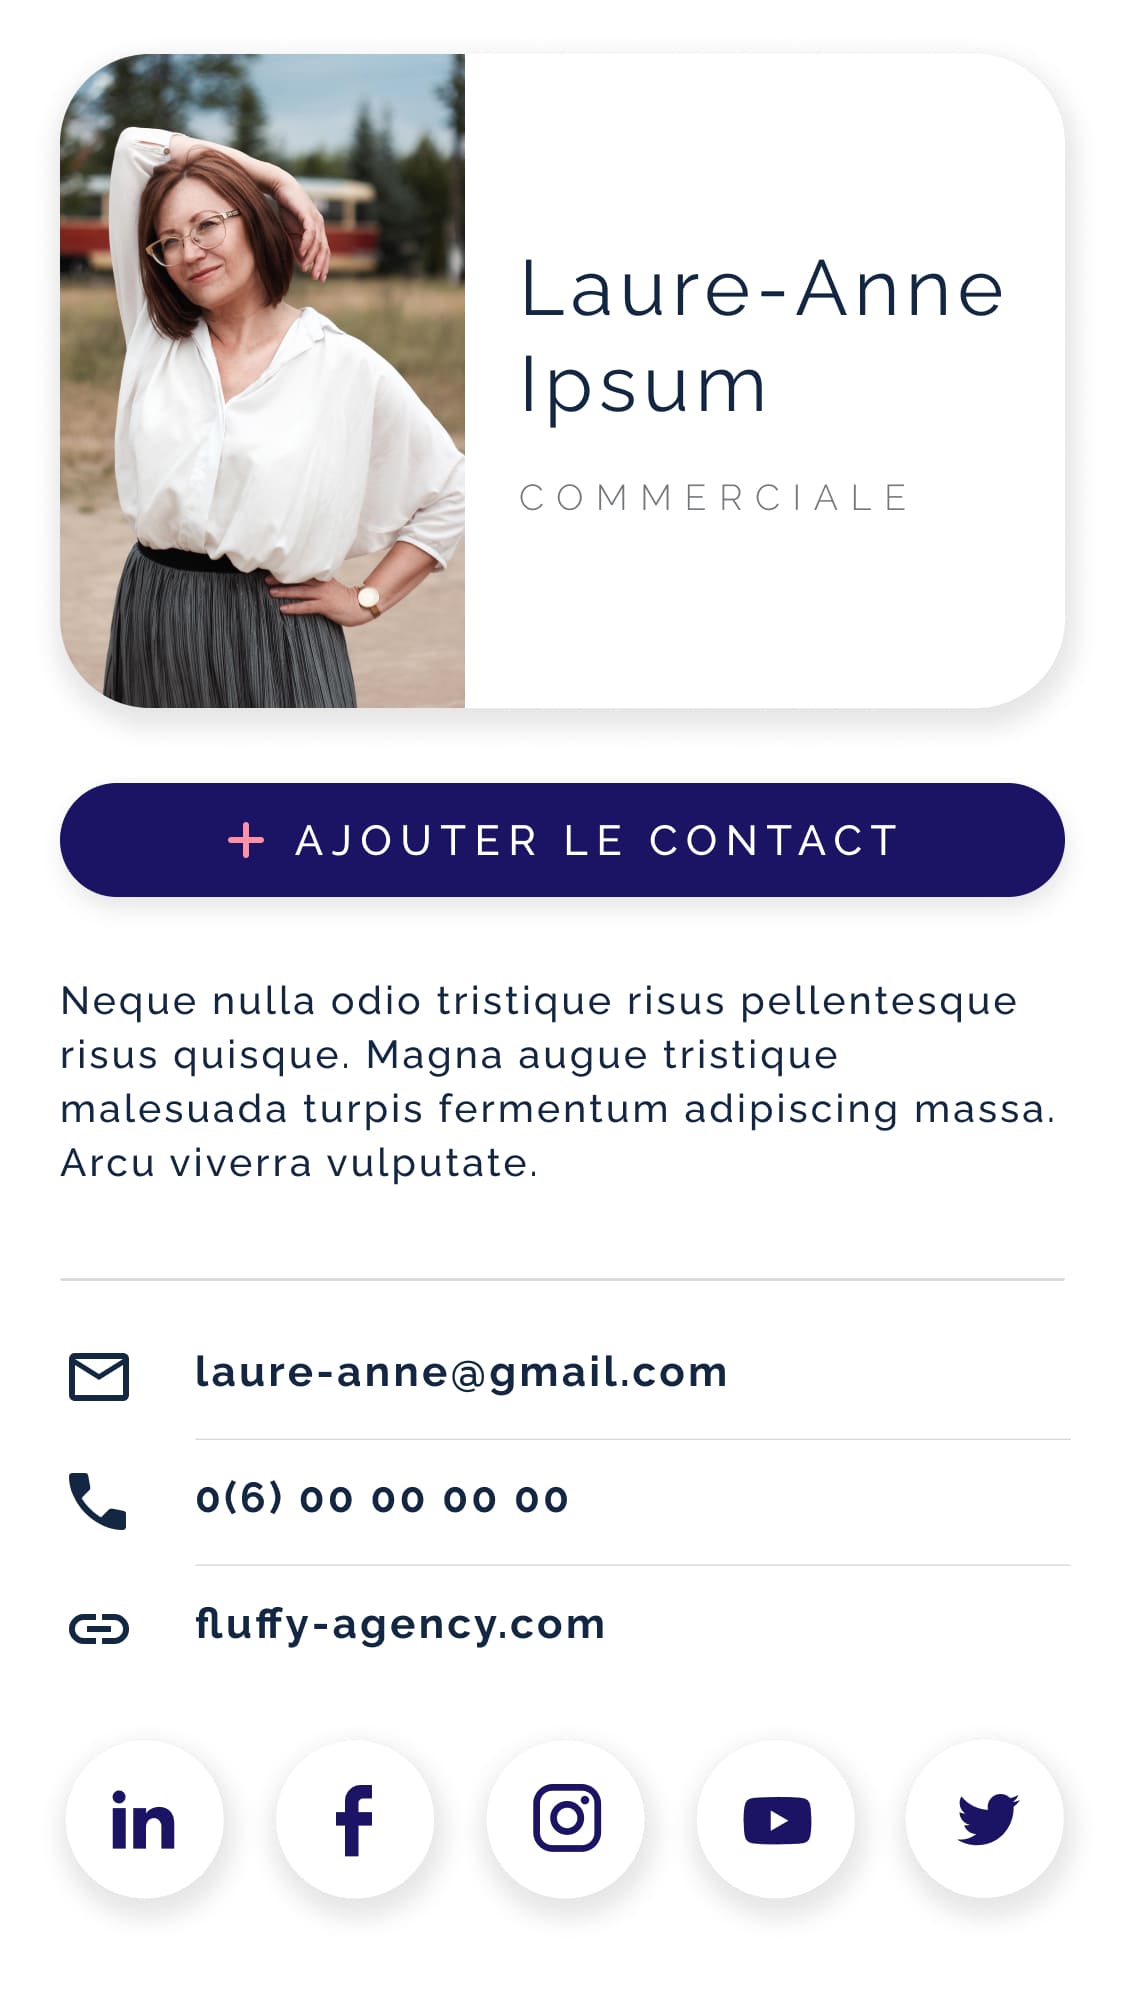 Interface de contact Laure-Anne Ipsum